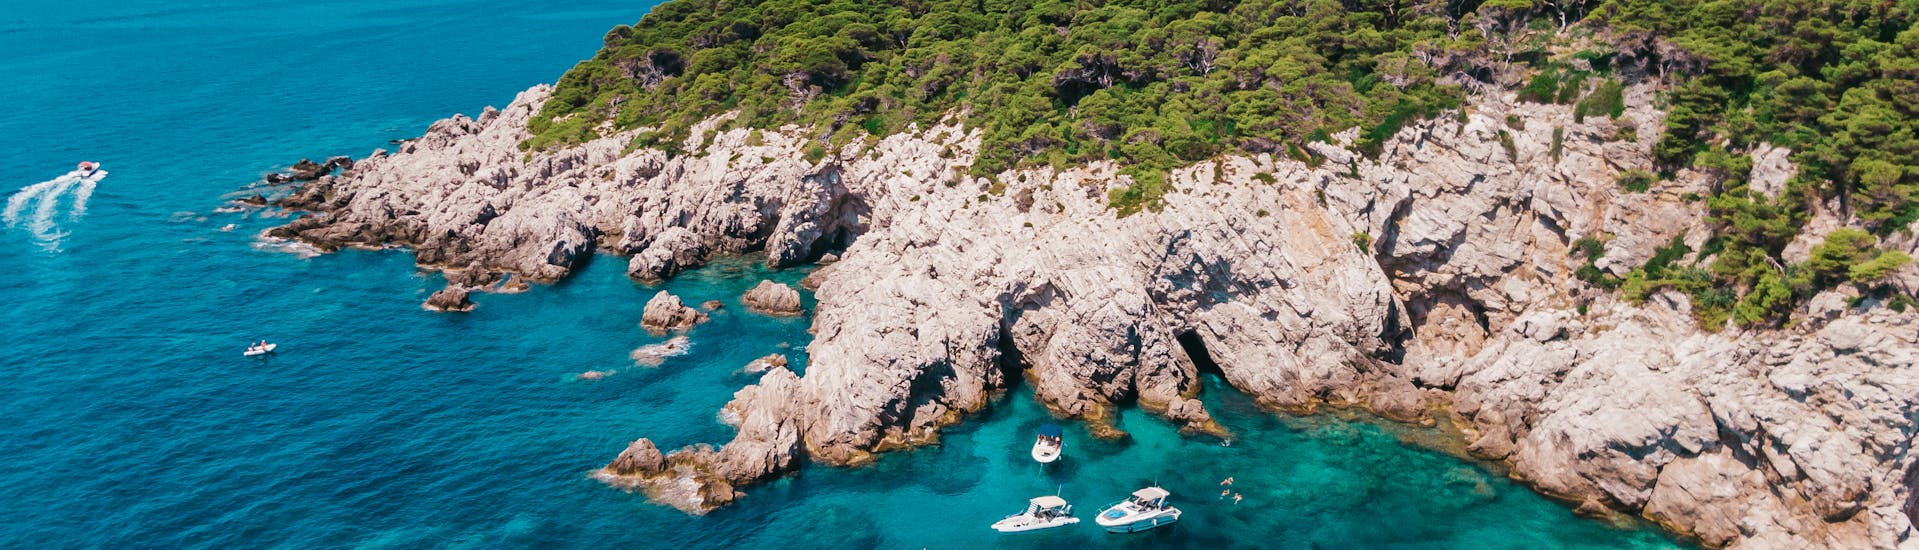 Privé boottocht van Dubrovnik naar Elaphiti Islands met zwemmen & wild spotten.